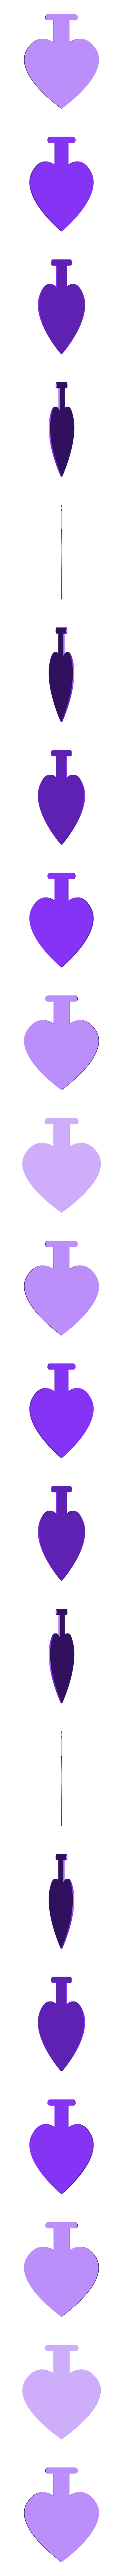 heart_back.stl Descargar archivo STL gratis Me encanta el Chimi (alfiler o broche) • Modelo imprimible en 3D, LordTailor